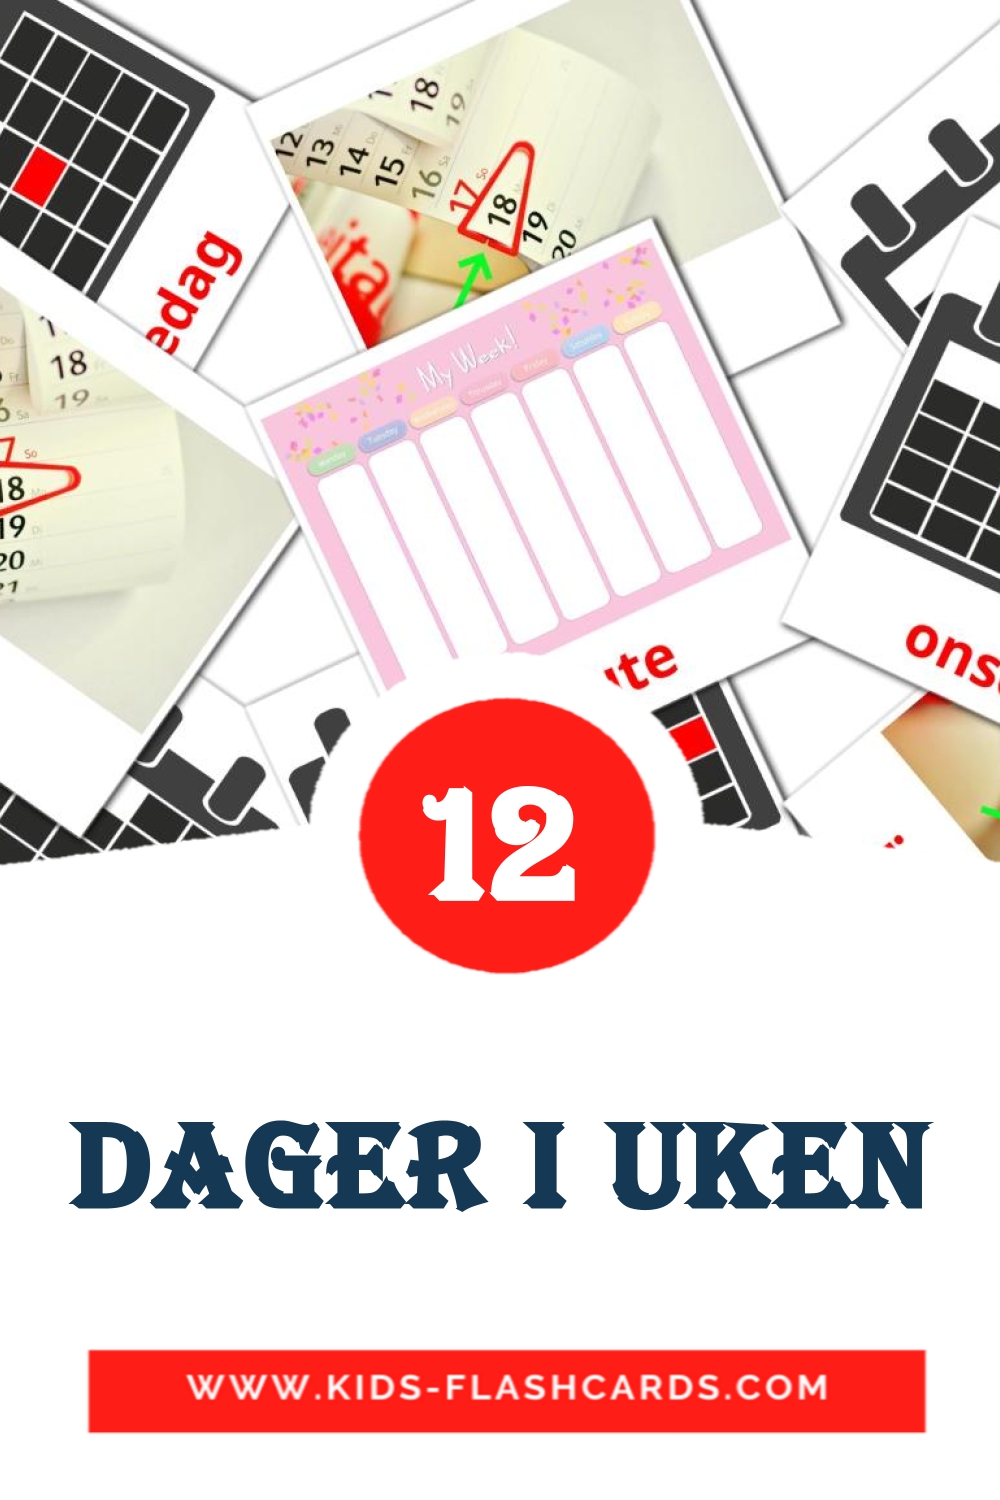 12 Cartões com Imagens de Dager i uken para Jardim de Infância em norueguês